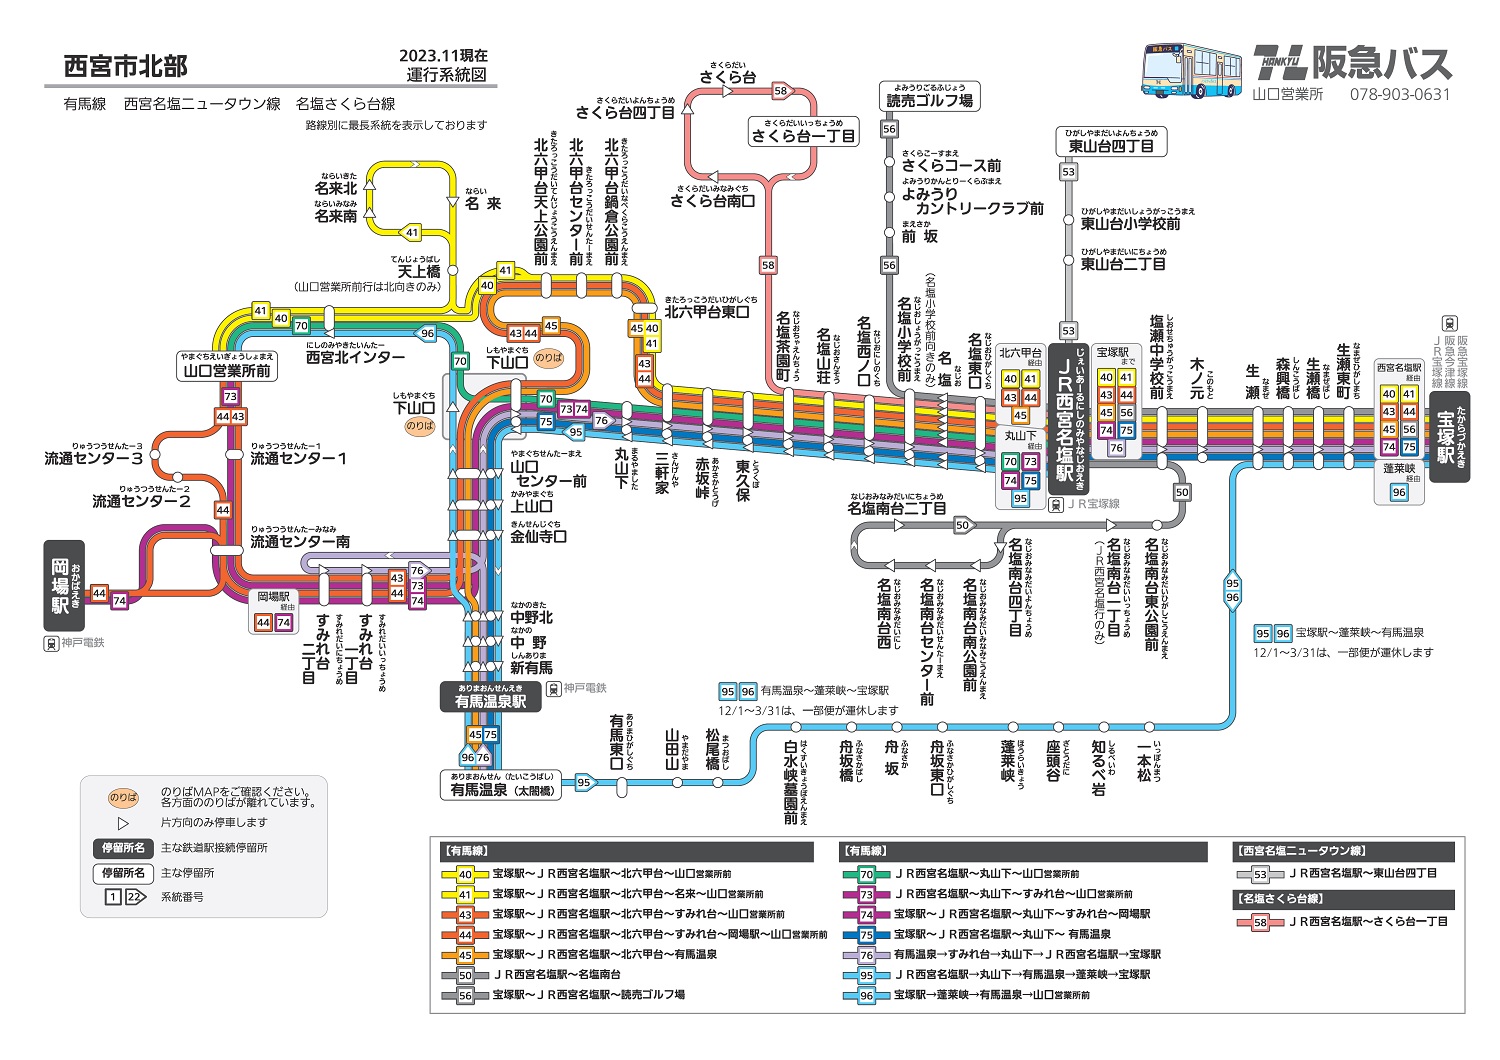 運行系統図 山口営業所 路線バス 阪急バス